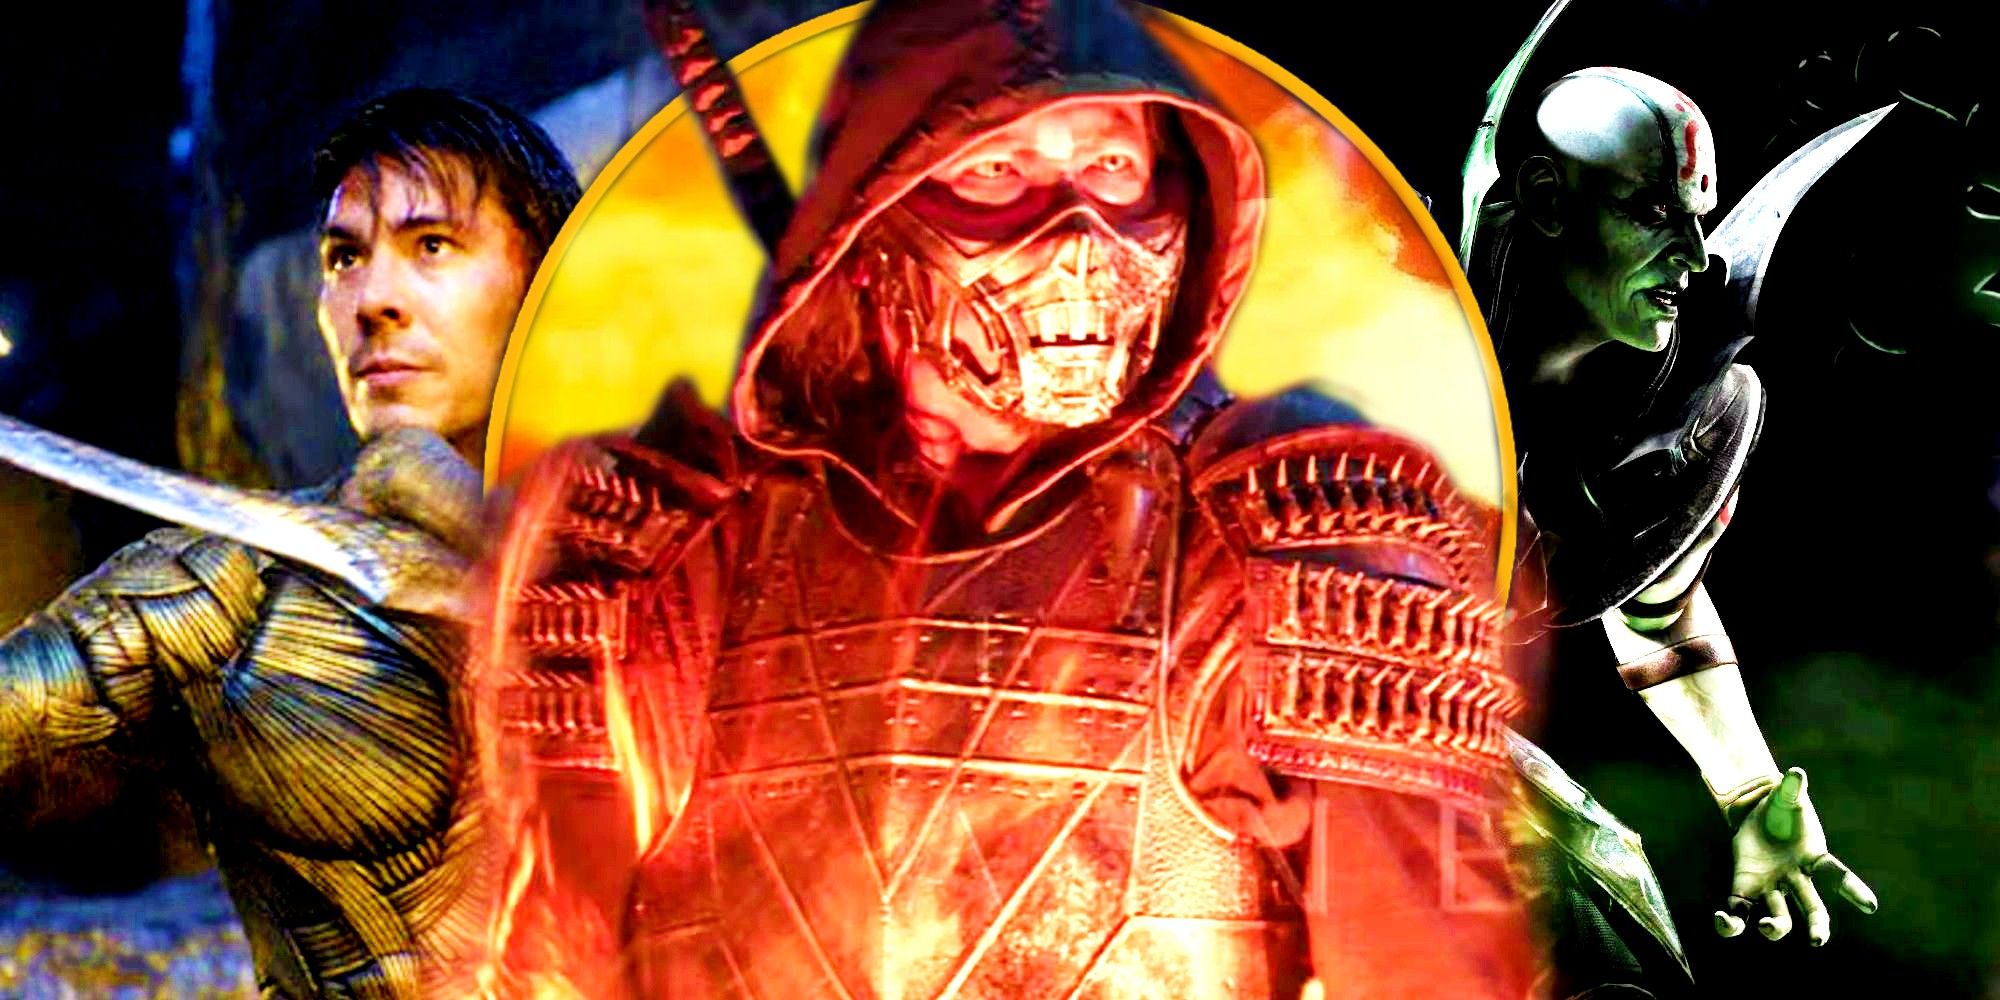 El actor Scorpion, Hiroyuki Sanada, ofrece un adelanto de Mortal Kombat 2